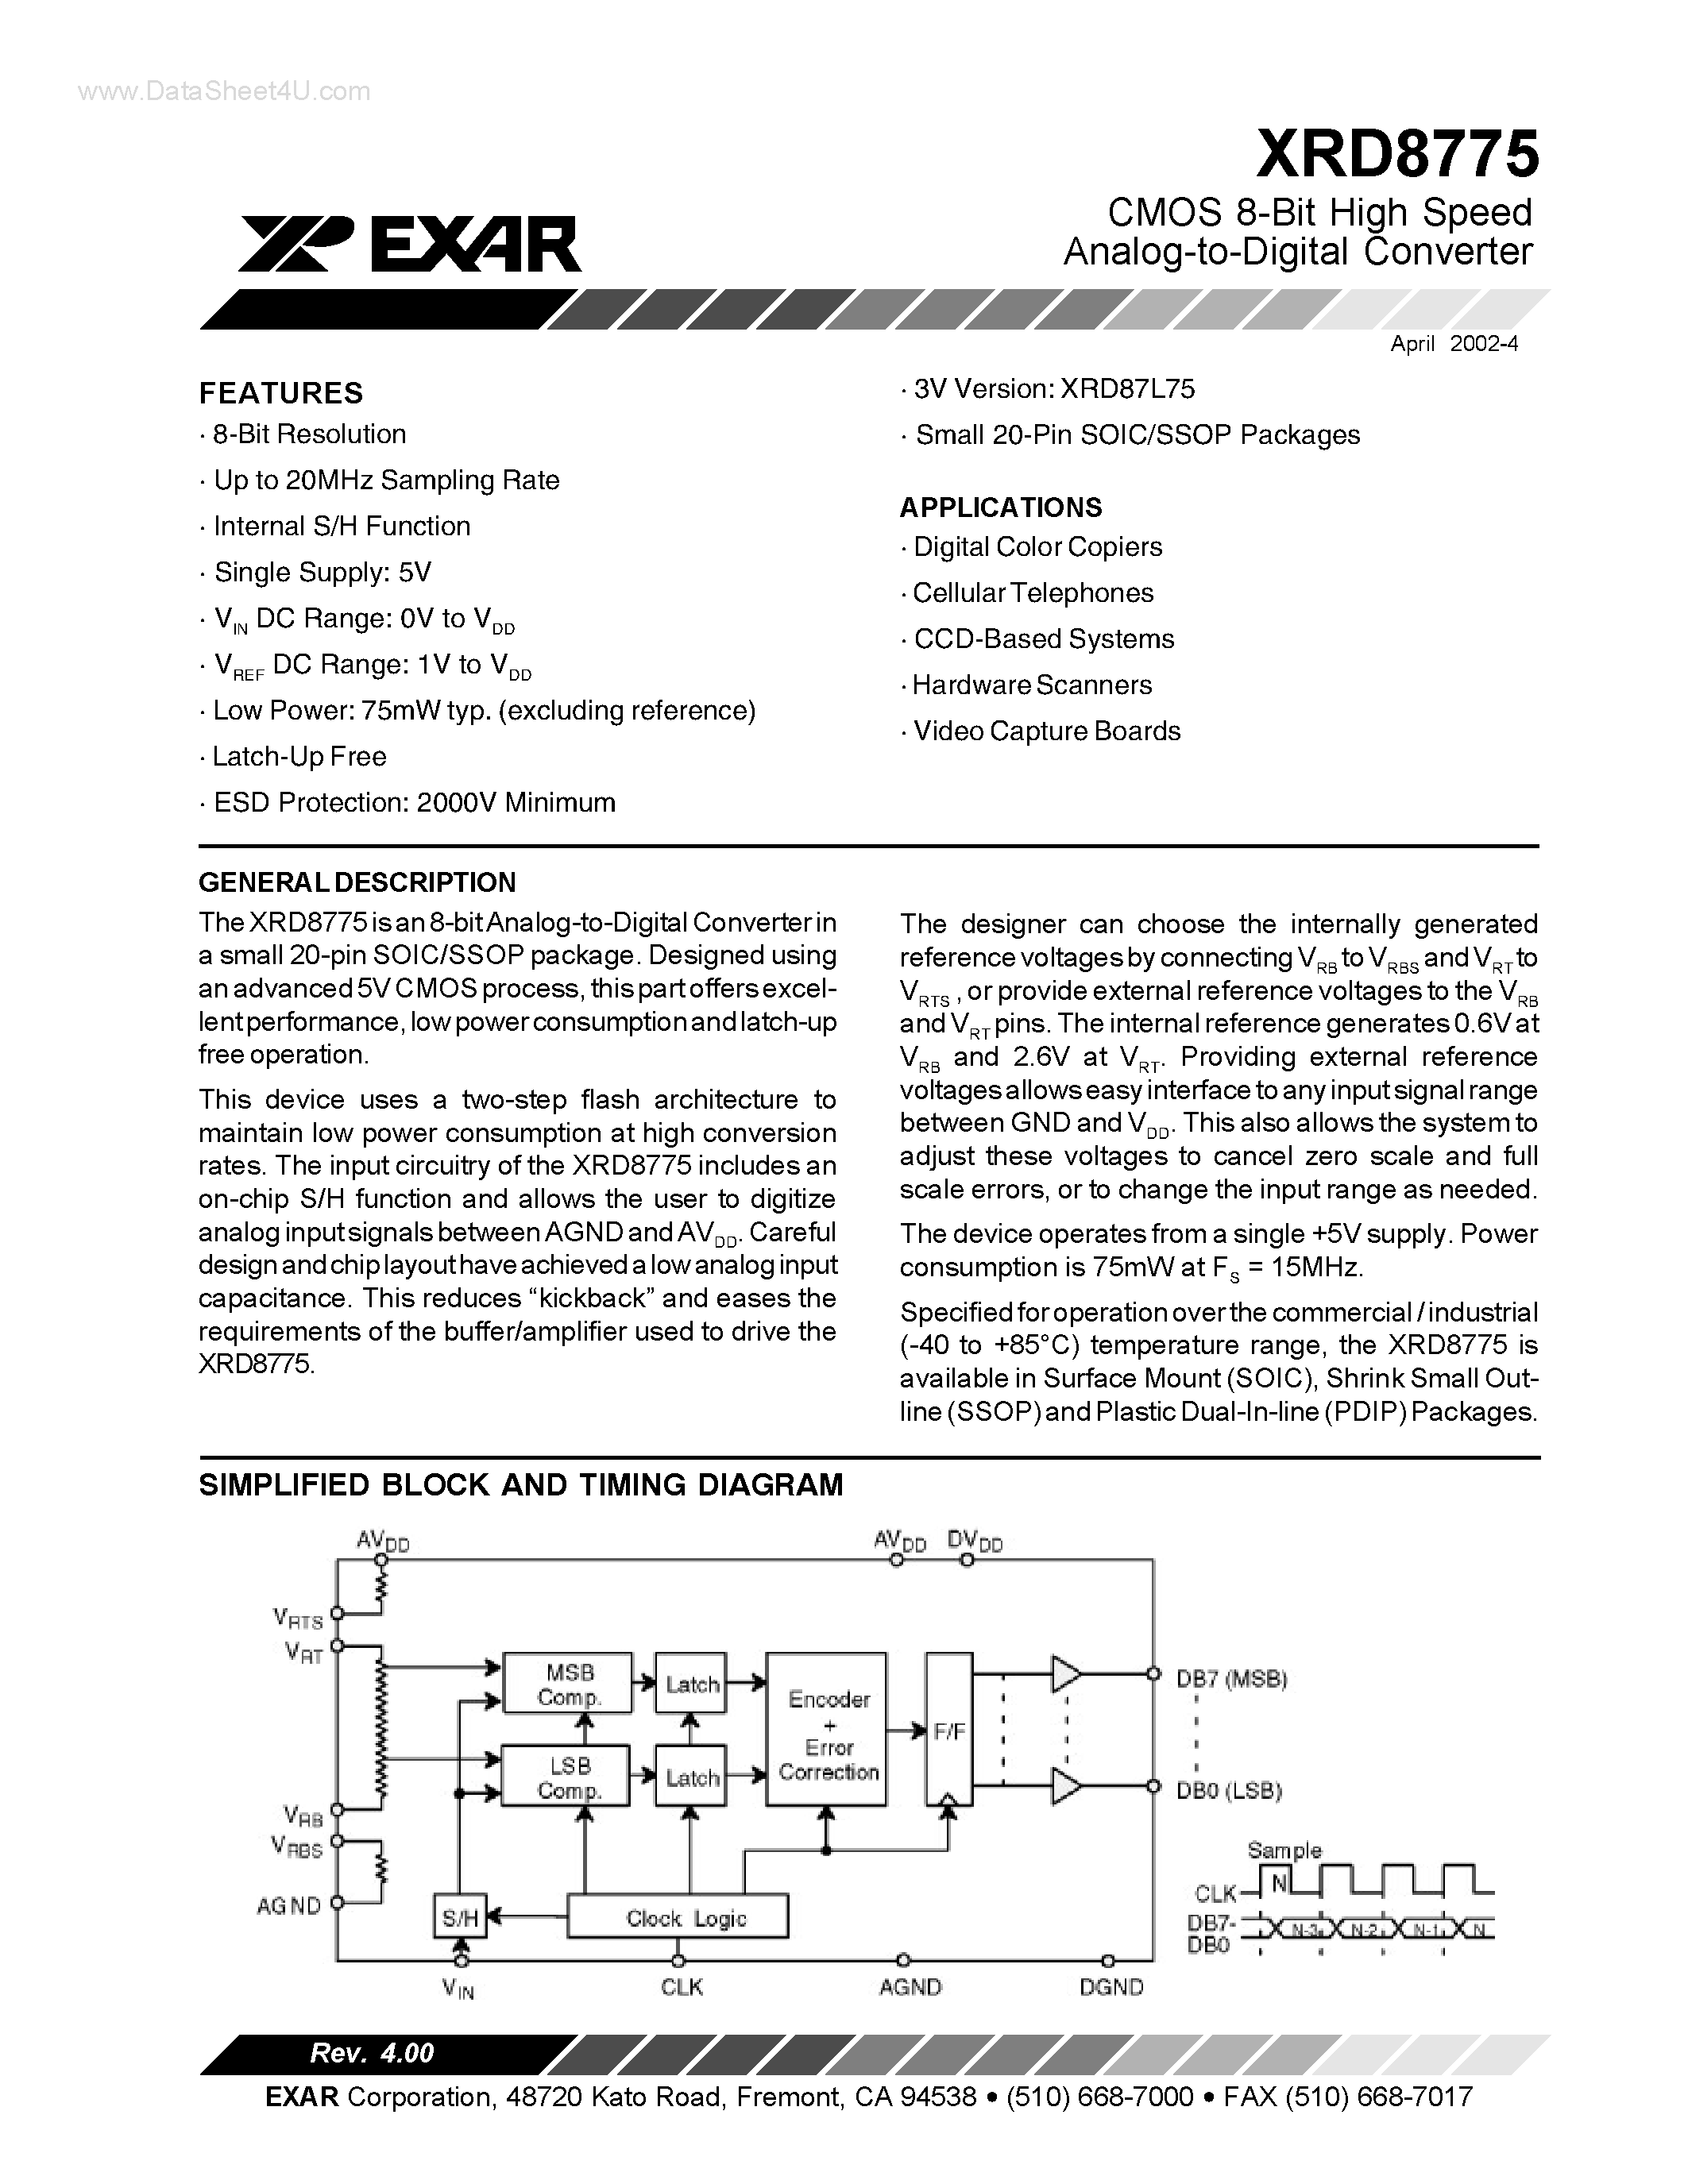 Datasheet XRD8775 - CMOS 8-Bit High Speed Analog-to-Digital Converter page 1